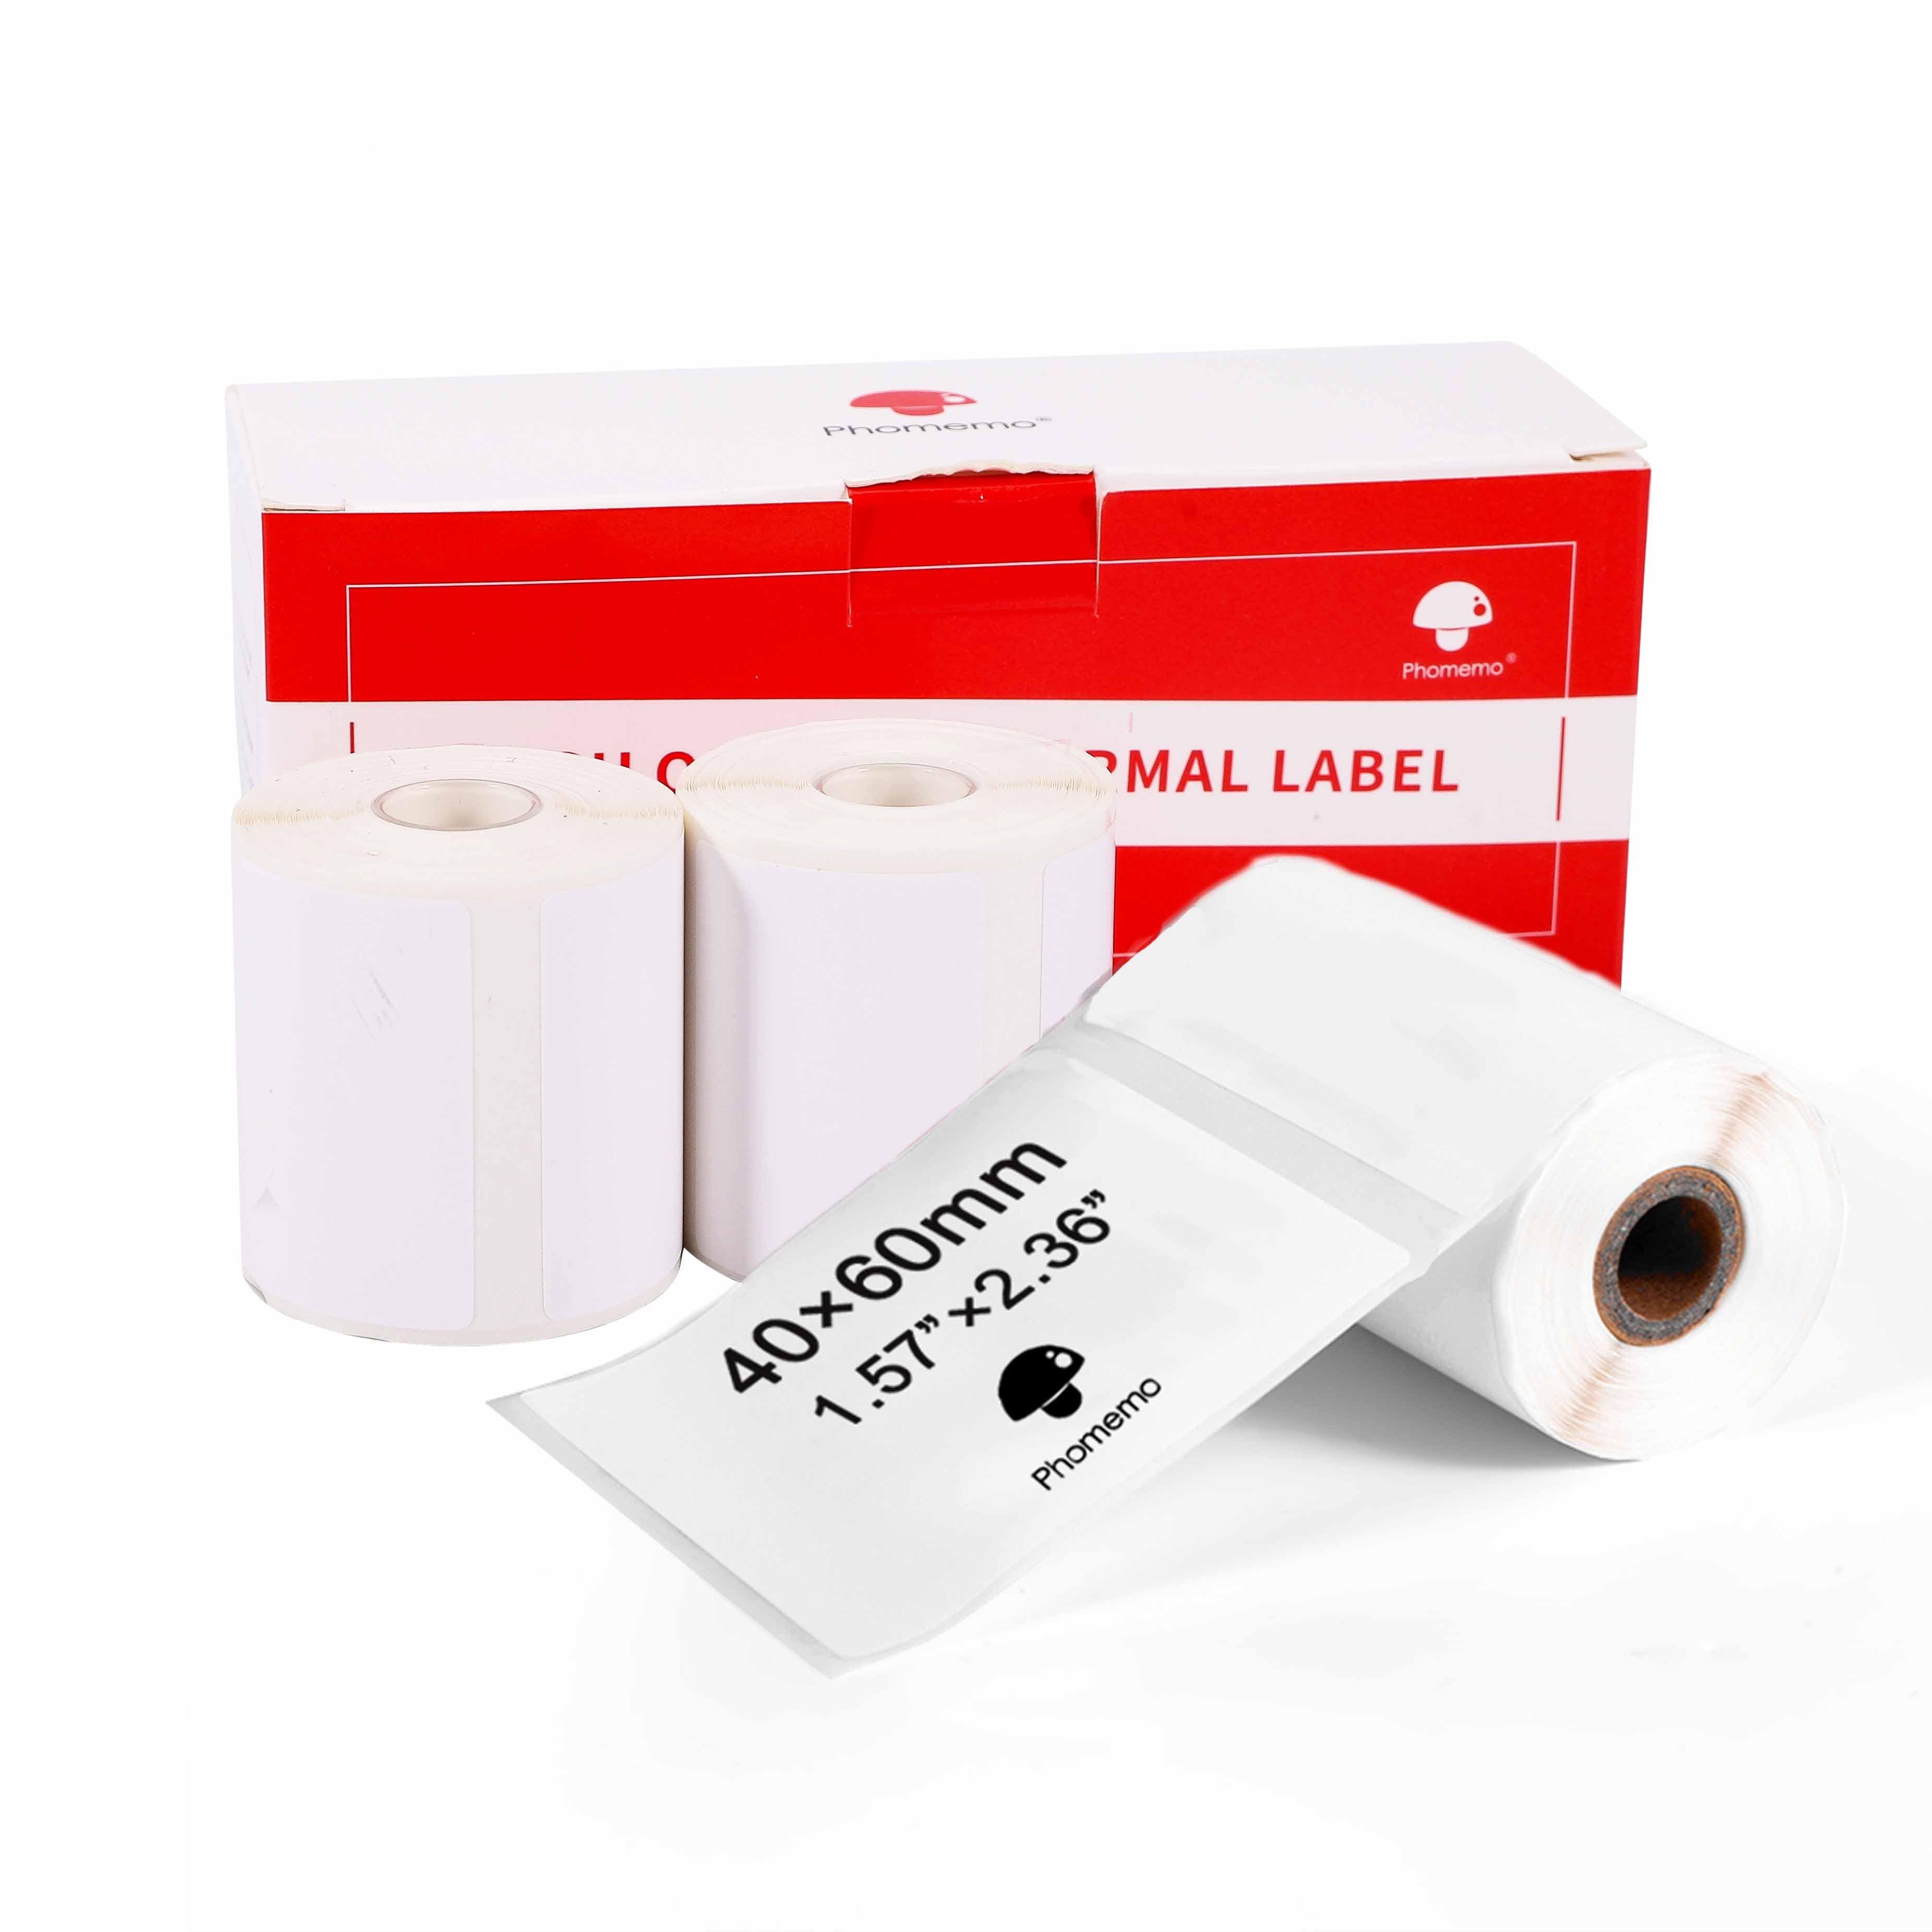 di alta qualità a buon mercato mini carta phomemo m110 stampante termica  con etichette adesive a colori per il telefono cellulare